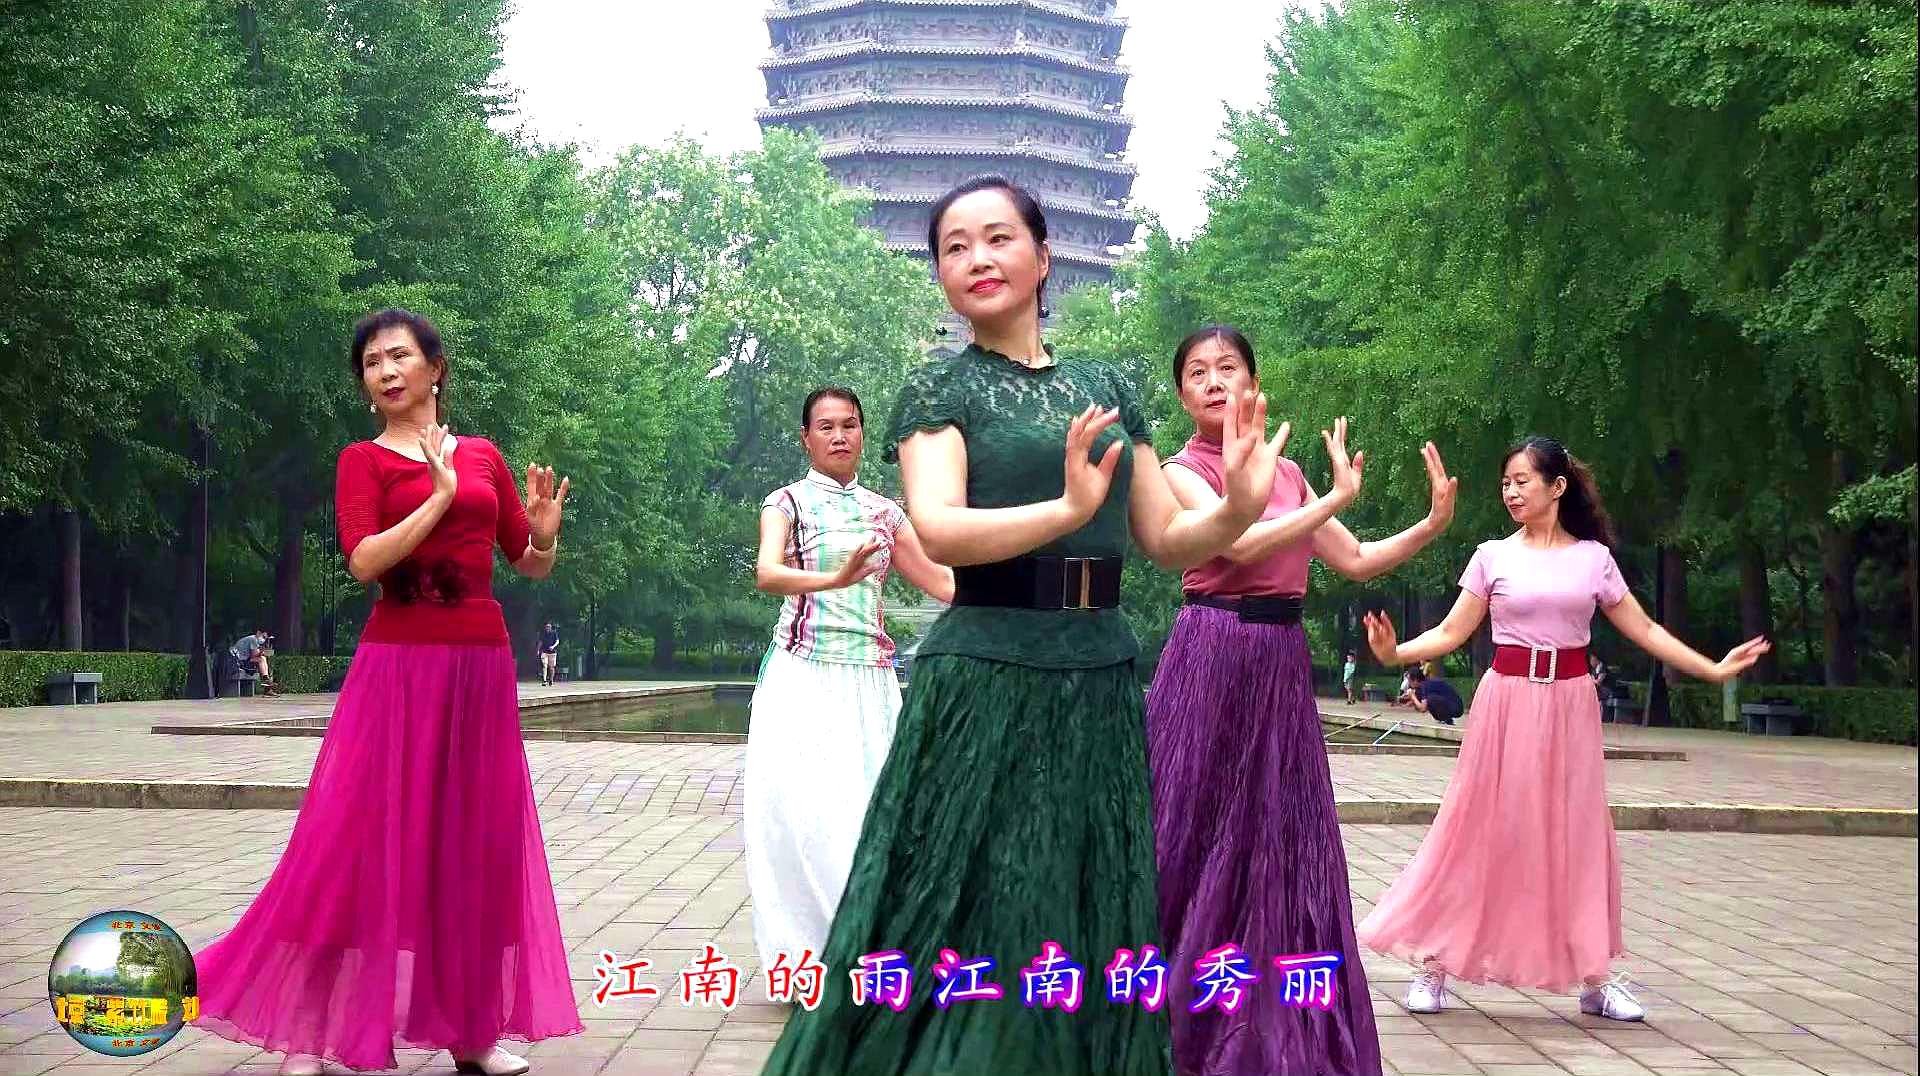 紫竹院广场舞《江南雨》,这支舞很久很久没有跳过了